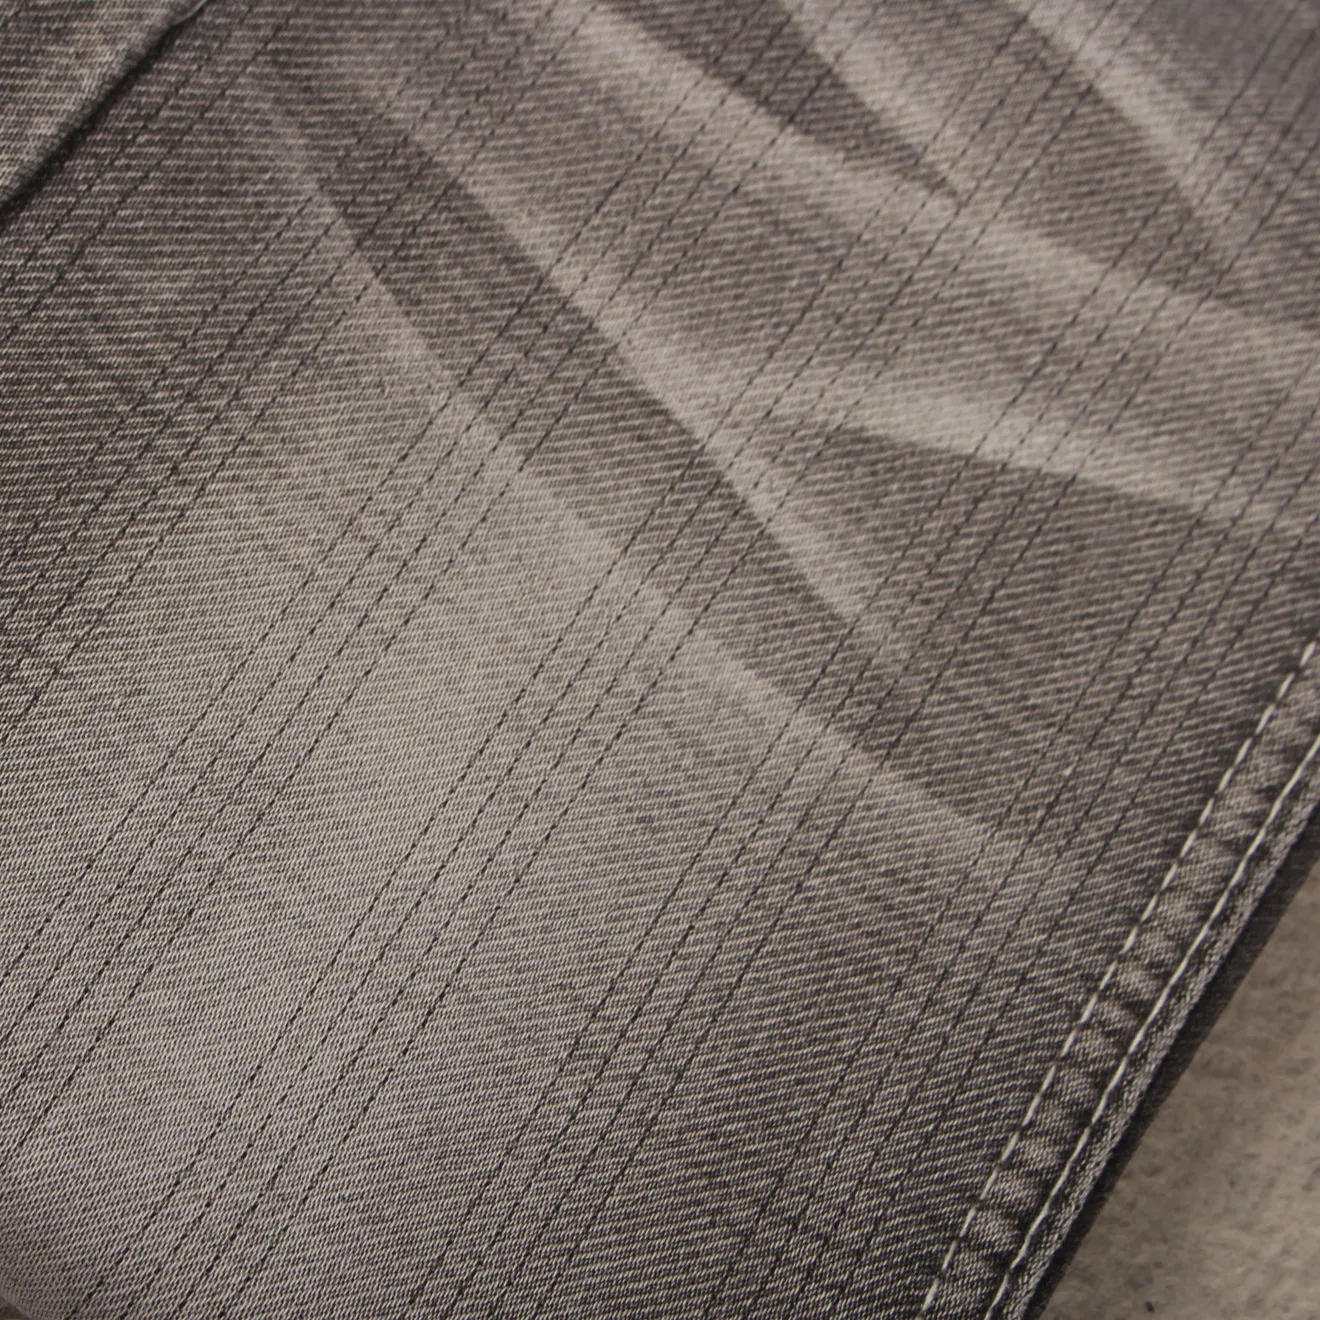 Tessuto denim jacquard dobby con paralume di colore nero zolfo con filamento di poliestere come filato ad anello relax comfort stretch